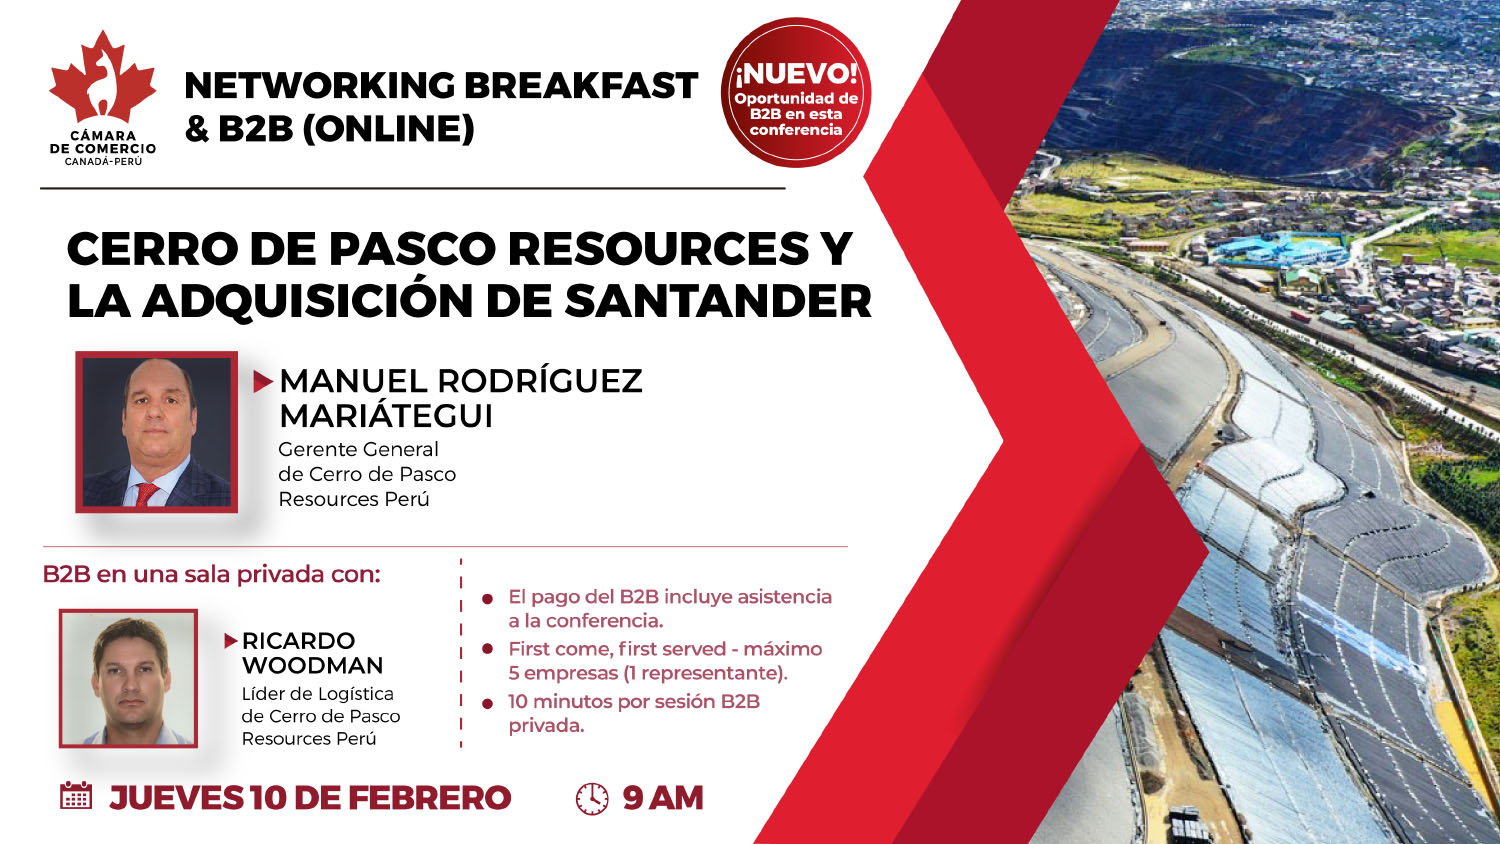 Cerro de Pasco Resources y la adquisición de Santander